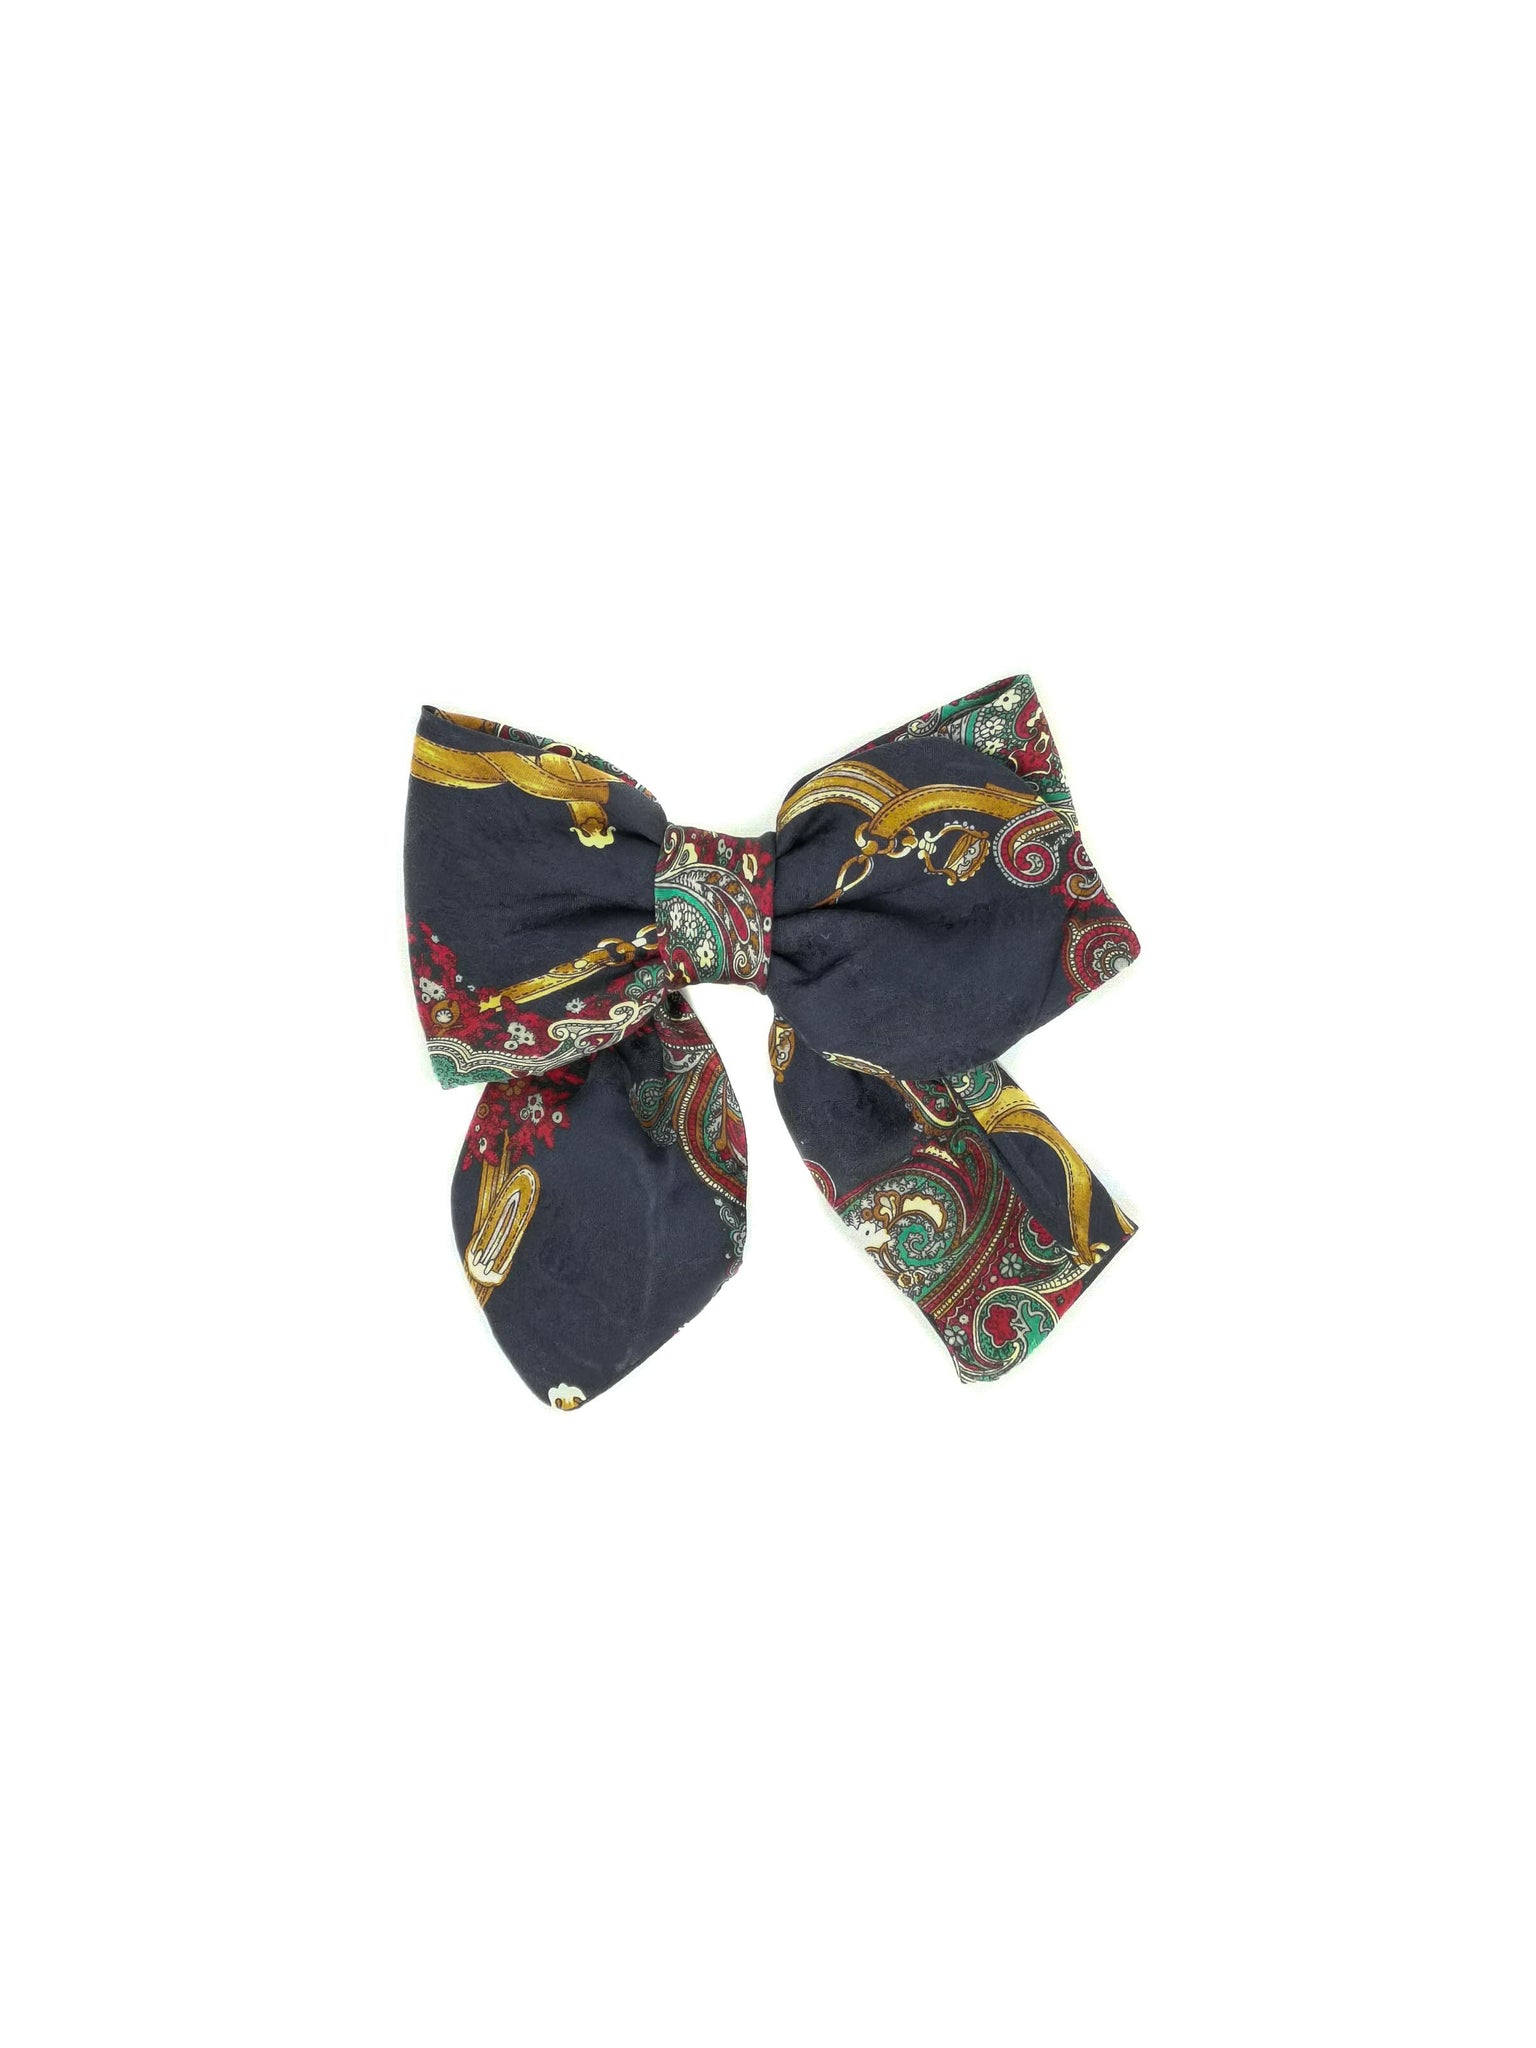 Barrette con fiocco in seta Paisley realizzata con cravatta vintage